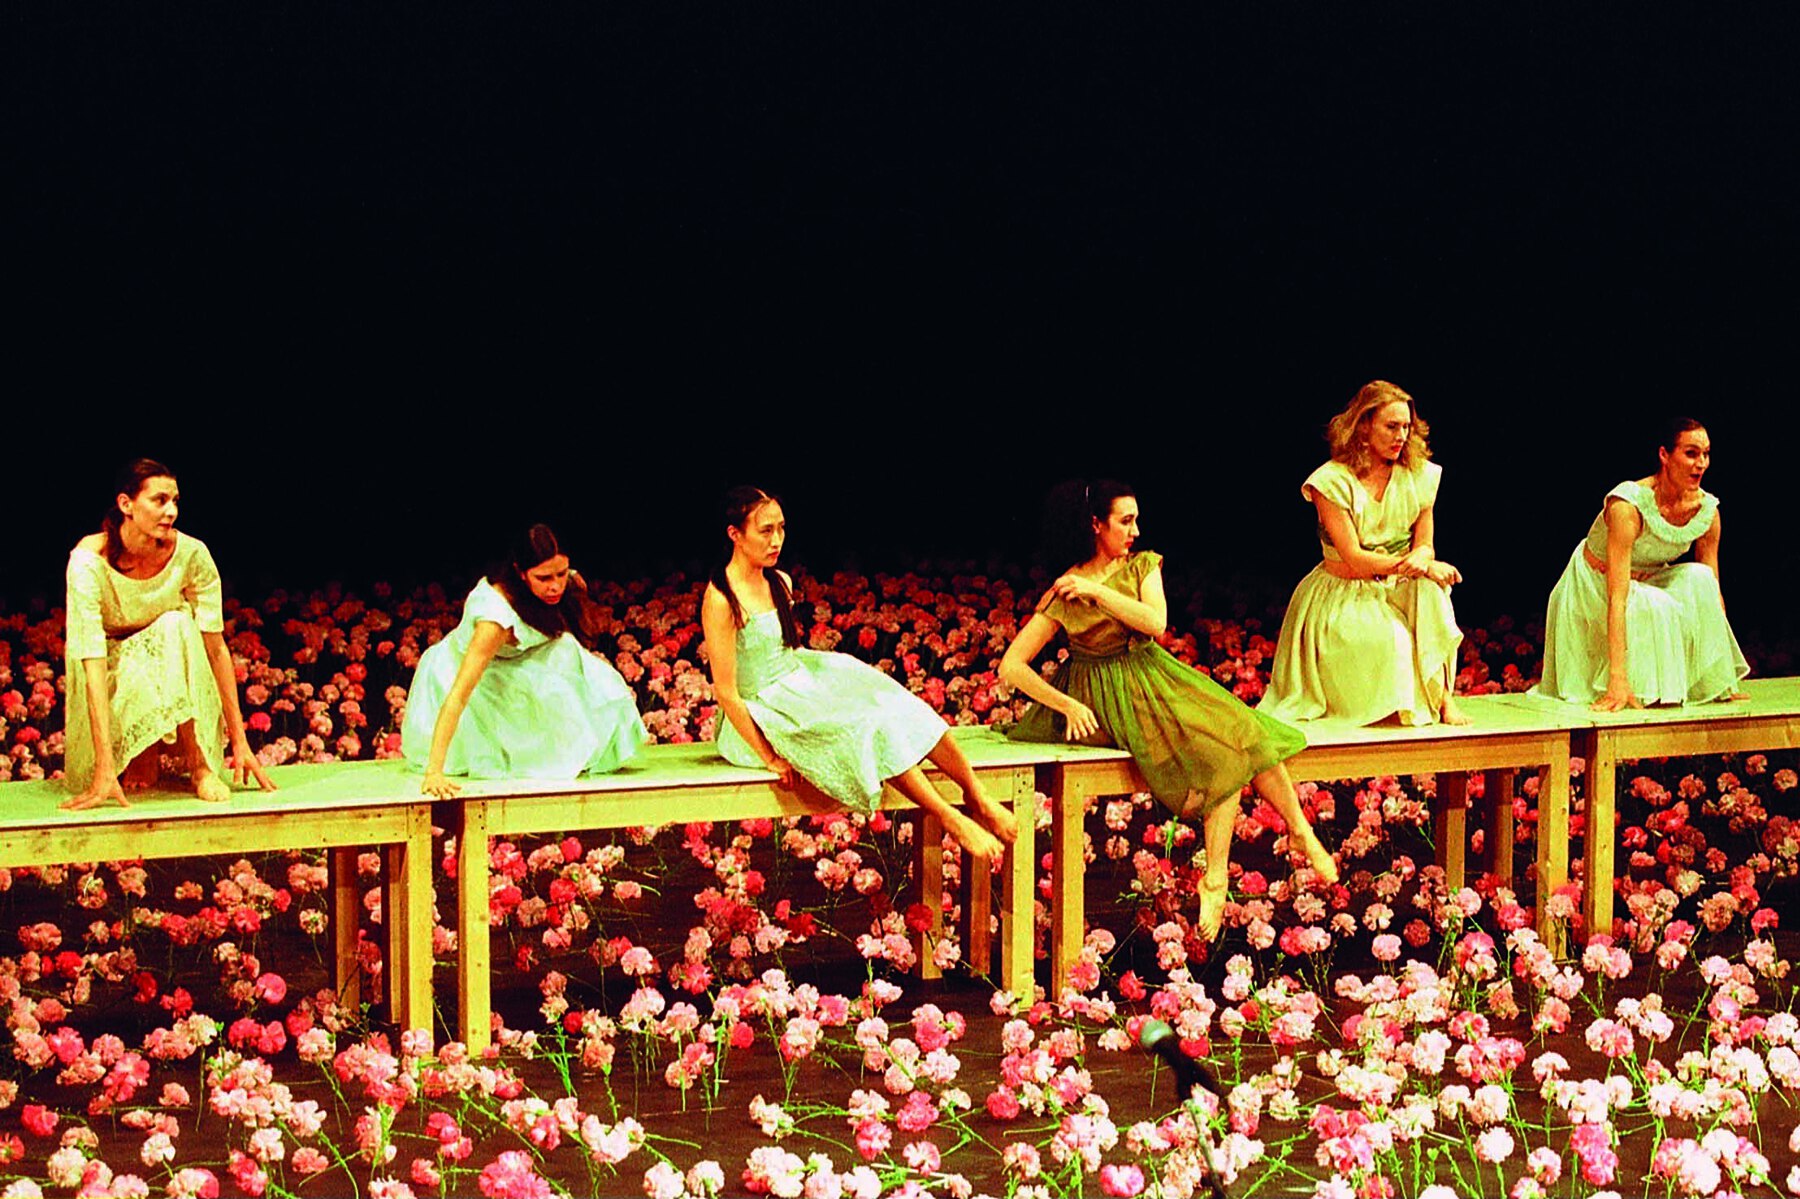 Fotografia. Seis mulheres usam vestido em tons de azul e verde e estão sentadas em mesas de madeira dispostas lado a lado sobre um palco florido. O chão está coberto de flores cor-de-rosa.